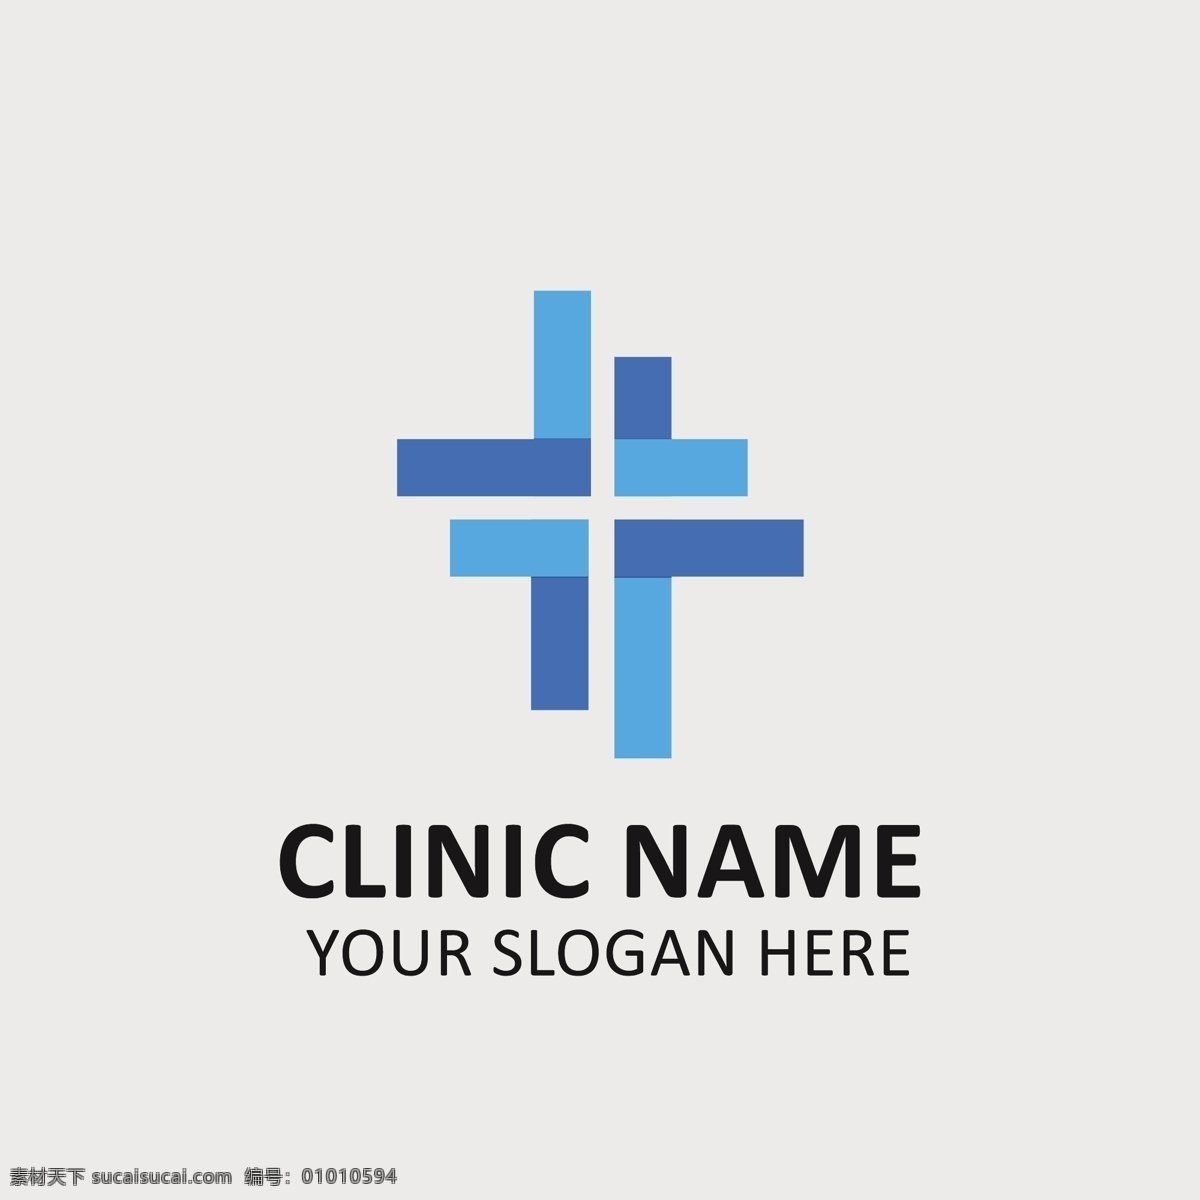 诊所 logo 模板 标识 医疗 健康 医院 交叉 企业 医药 制药 企业身份 身份 标志模板 口号 灰色